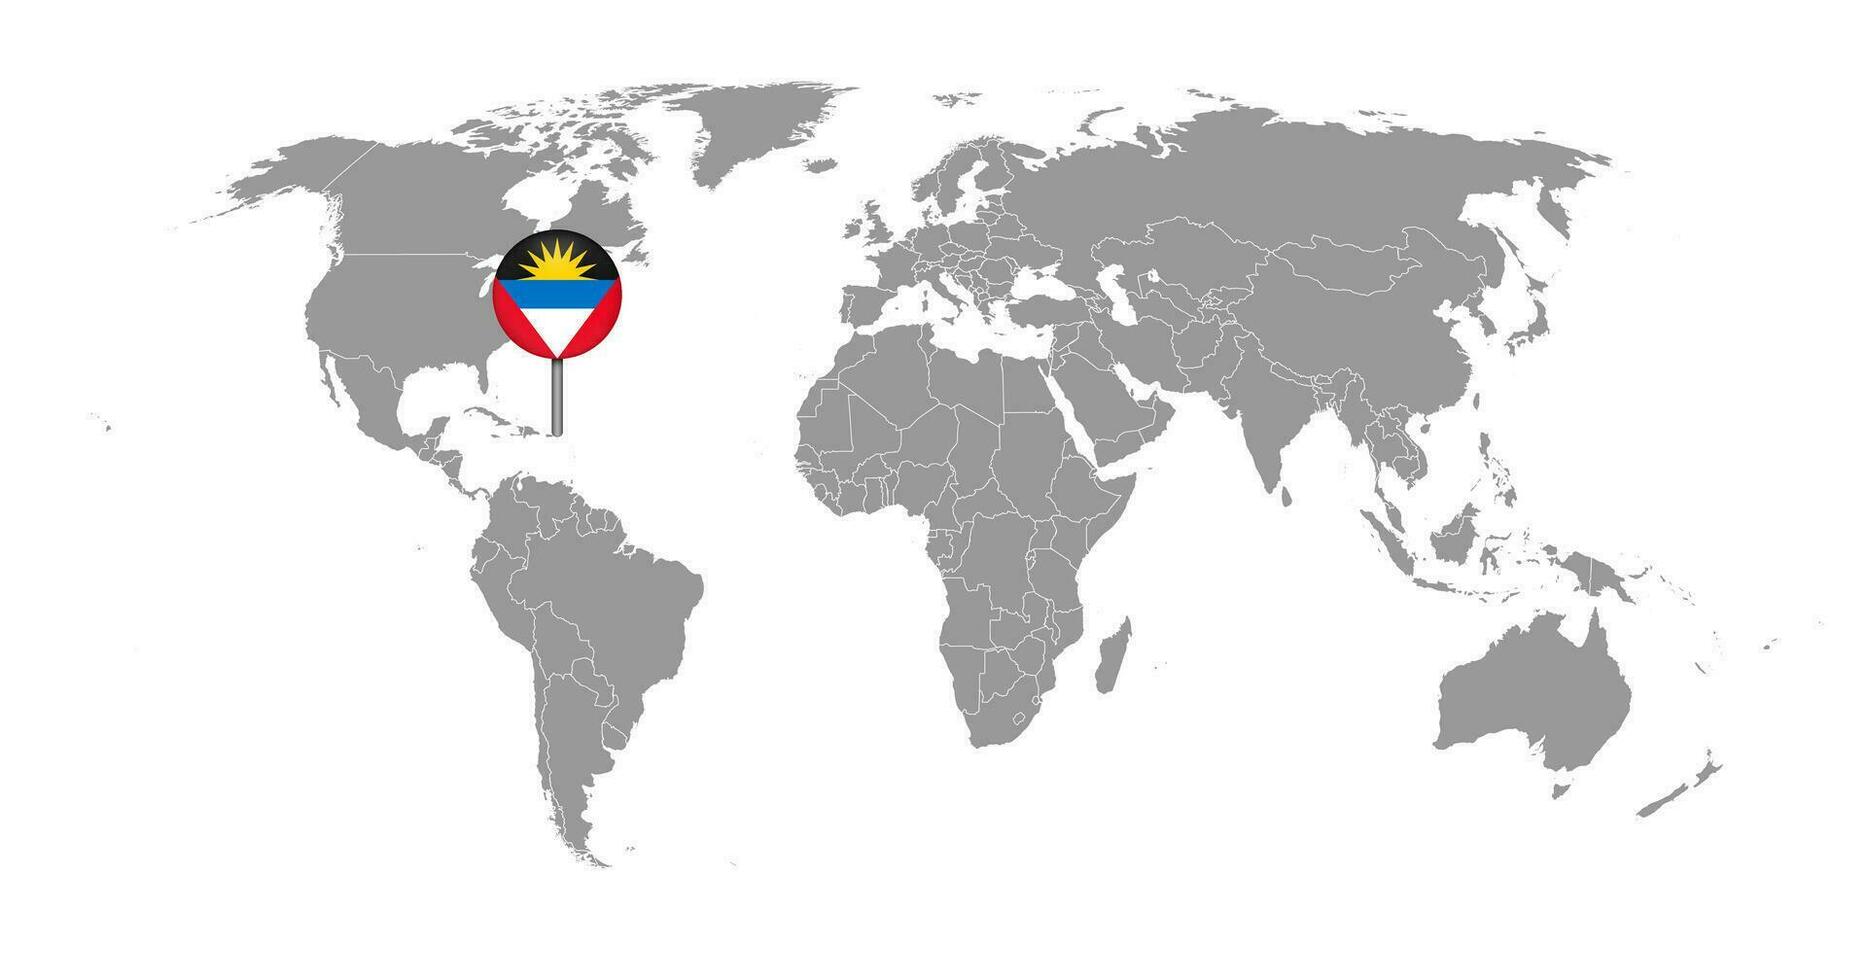 nålkarta med antigua och barbudas flagga på världskartan. vektor illustration.